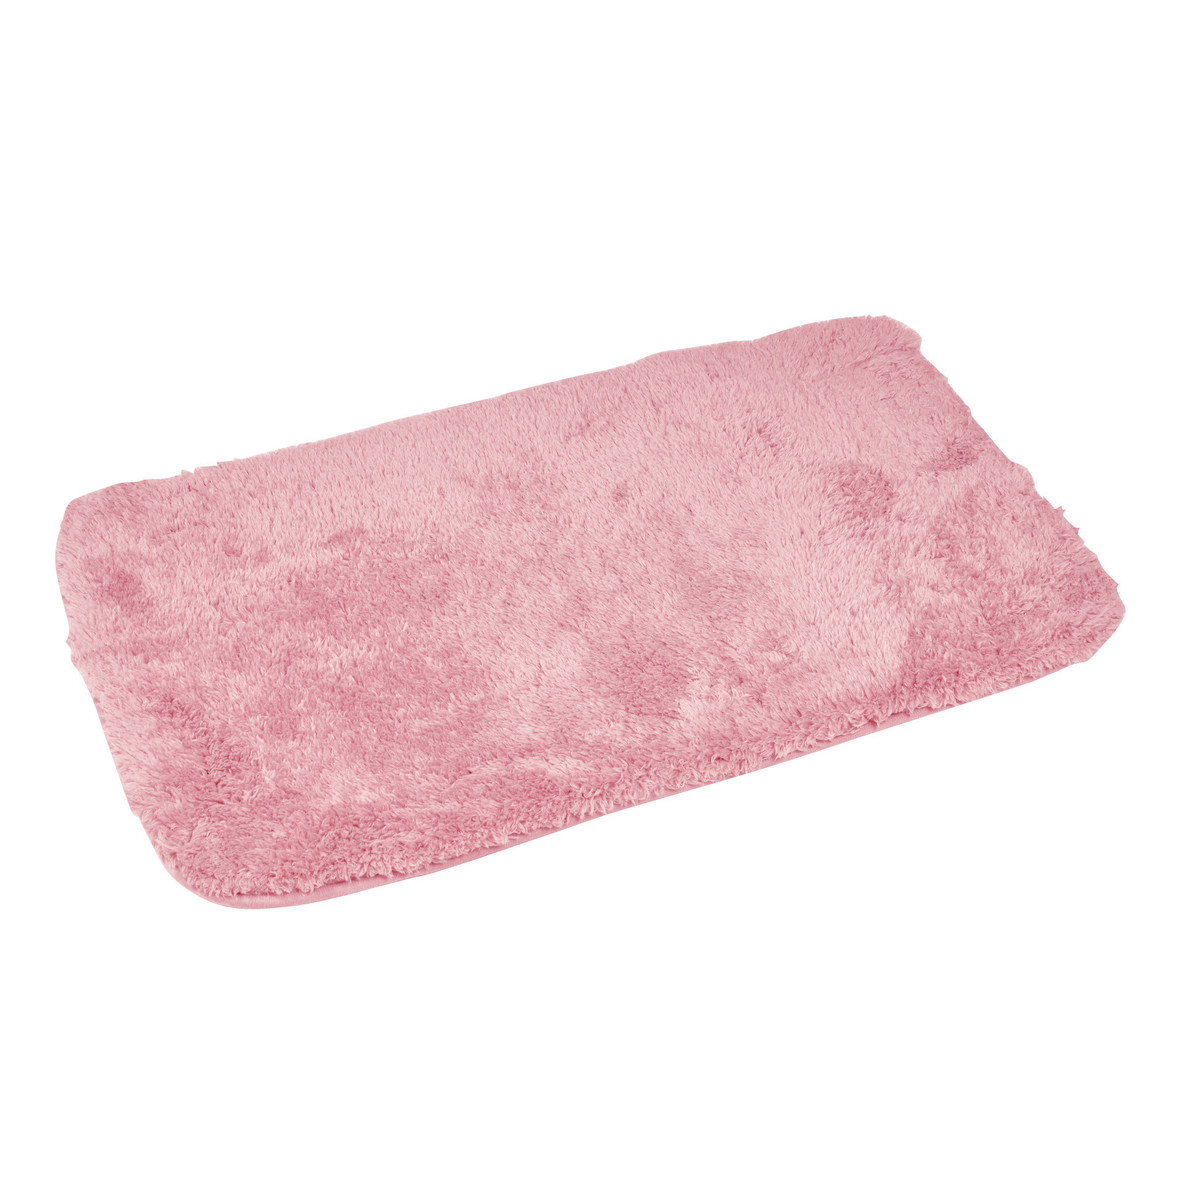 Home Bath mat Douceur d intérieur TAPIS DE BAIN 50 x 80 CM MICROFIBRE UNIE SOFTNESS ROSE POUDRE Pink